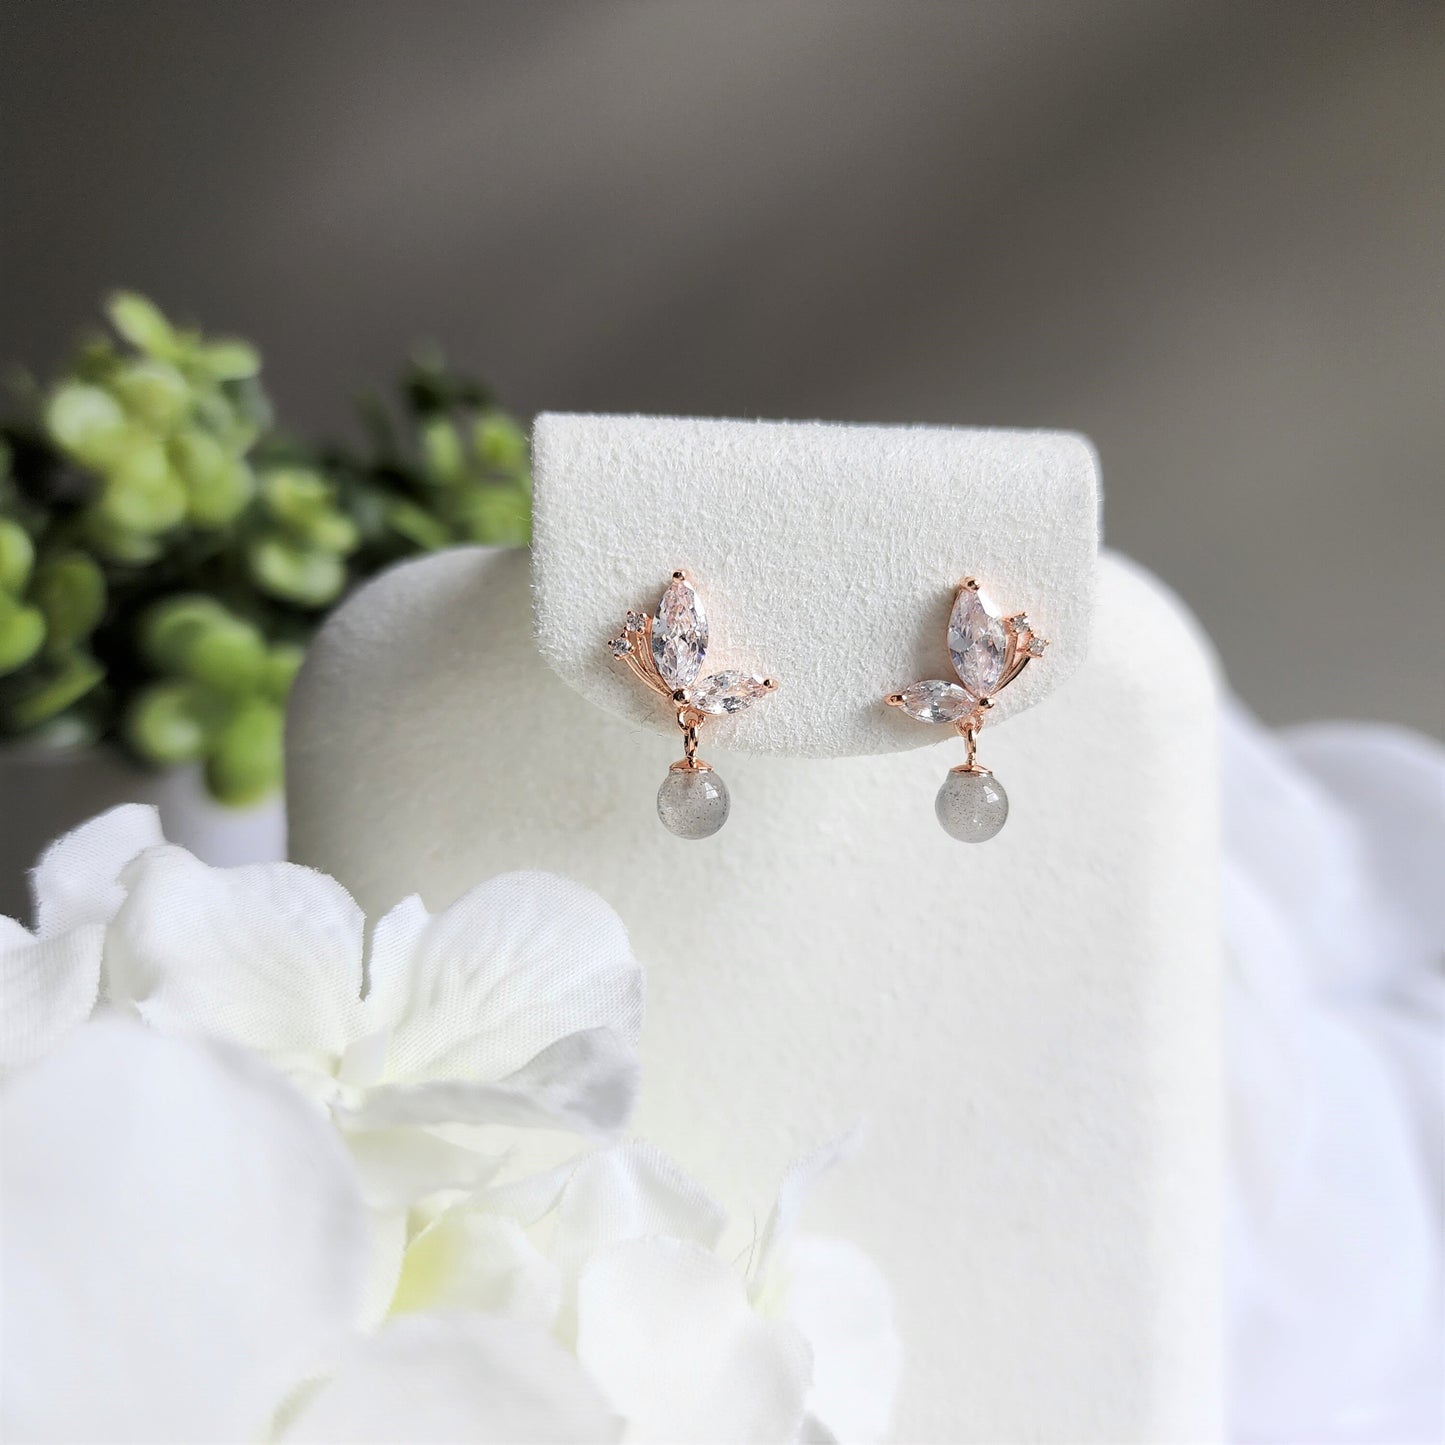 Moon stone butterfly earrings, Rose gold vermeil earrings, 925s silver earrings, gift for her